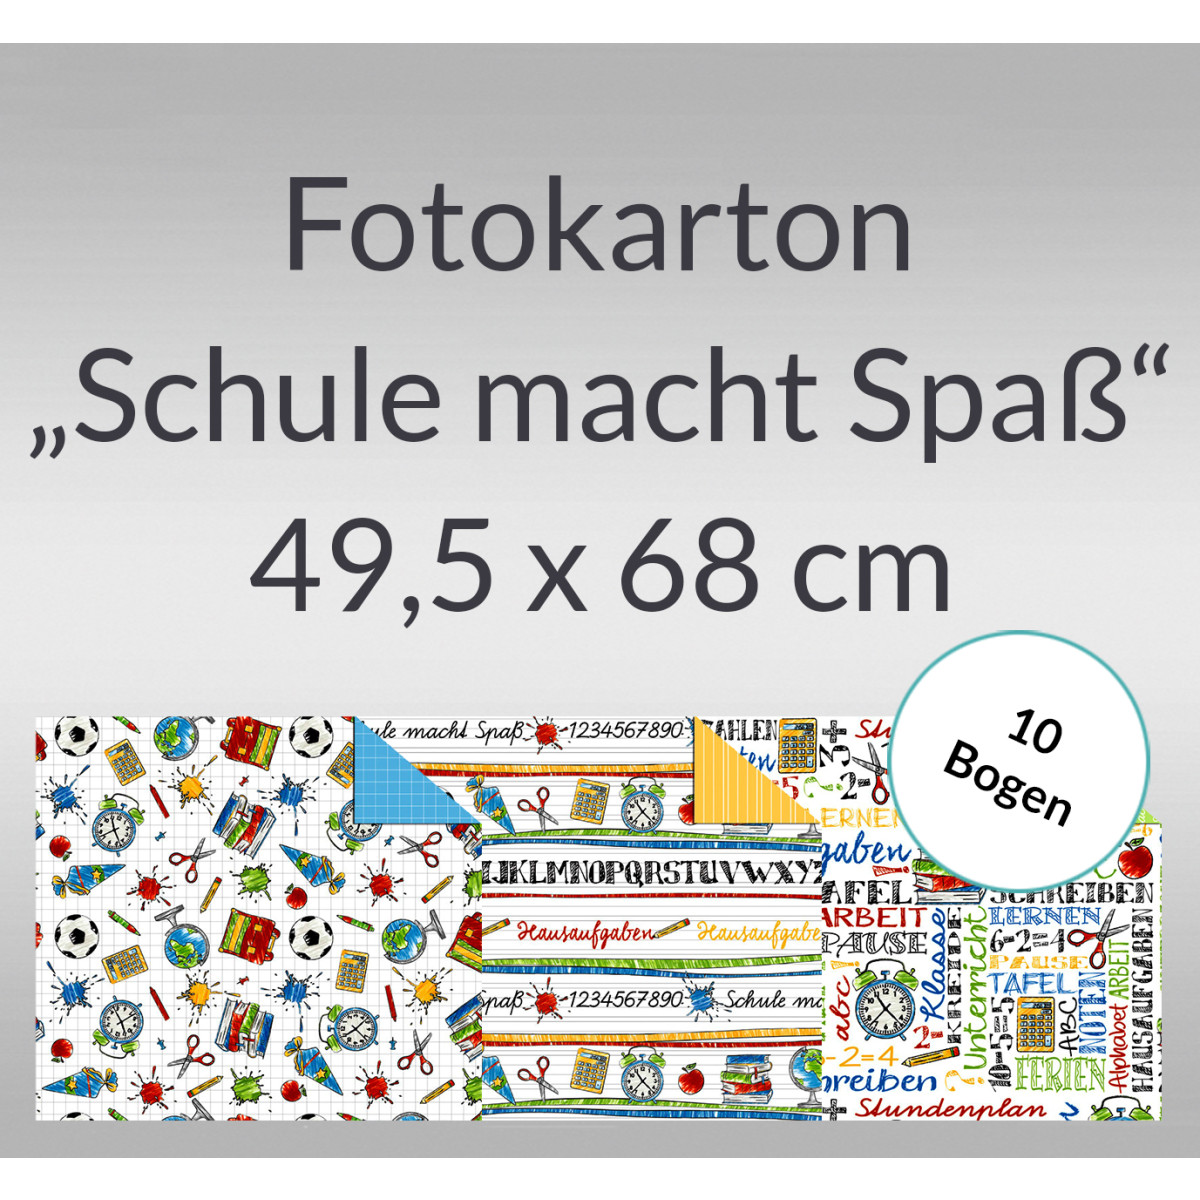 Fotokarton "Schule macht Spass" 49,5 x 68 cm - 10 Bogen